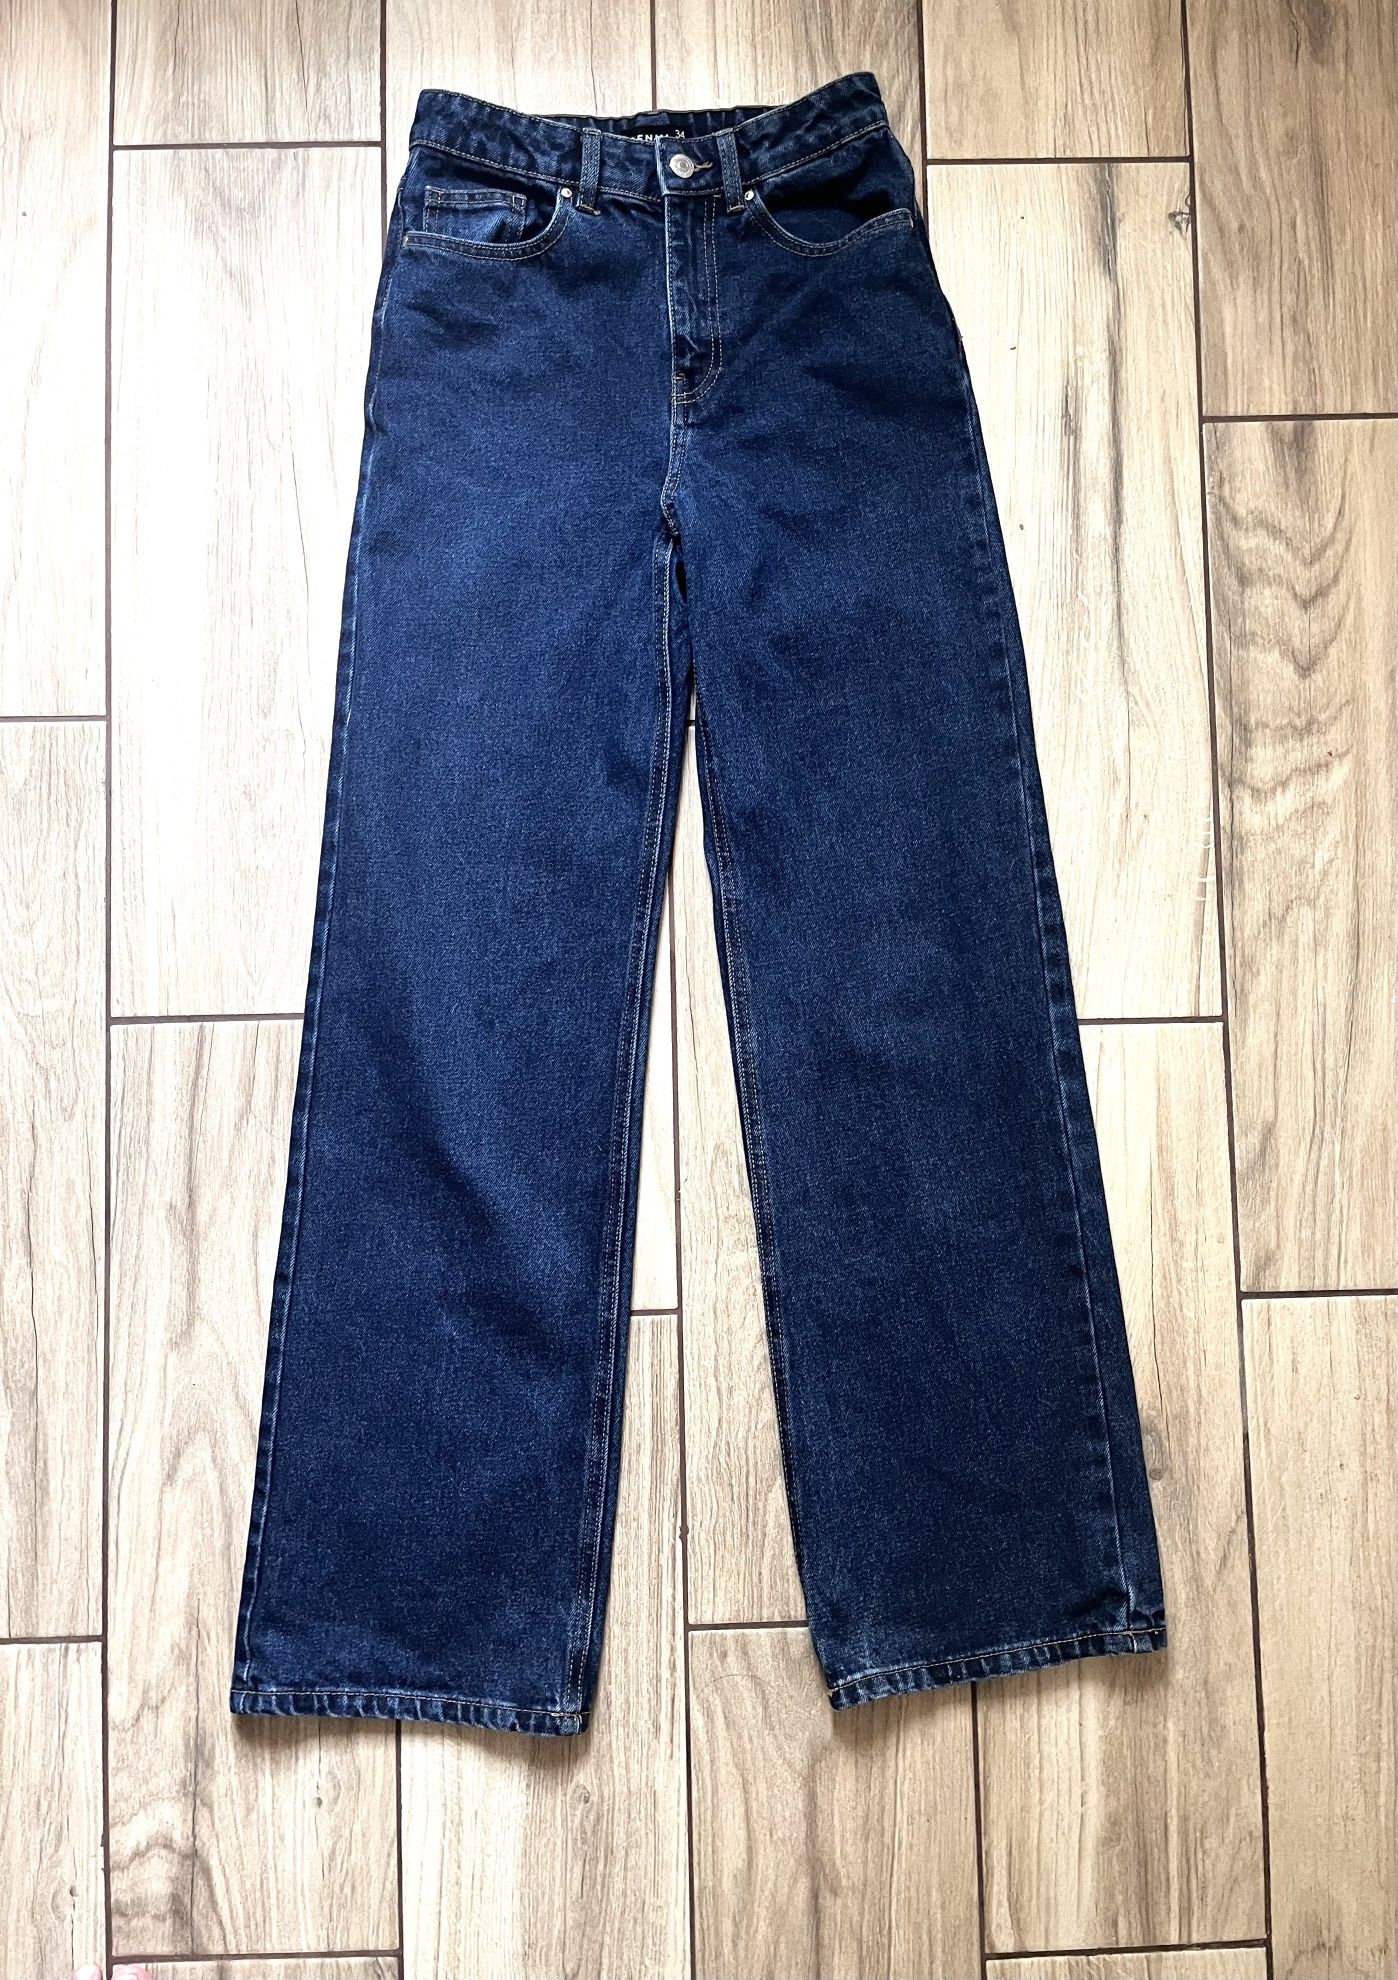 Женские широкие джинсы, размер 34/XS